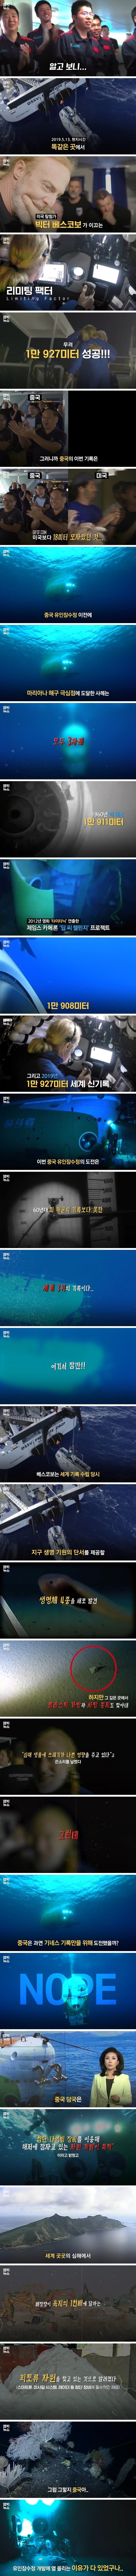 해저 11km 바닥에서 중국이 찾는 건 무엇 (2).jpg